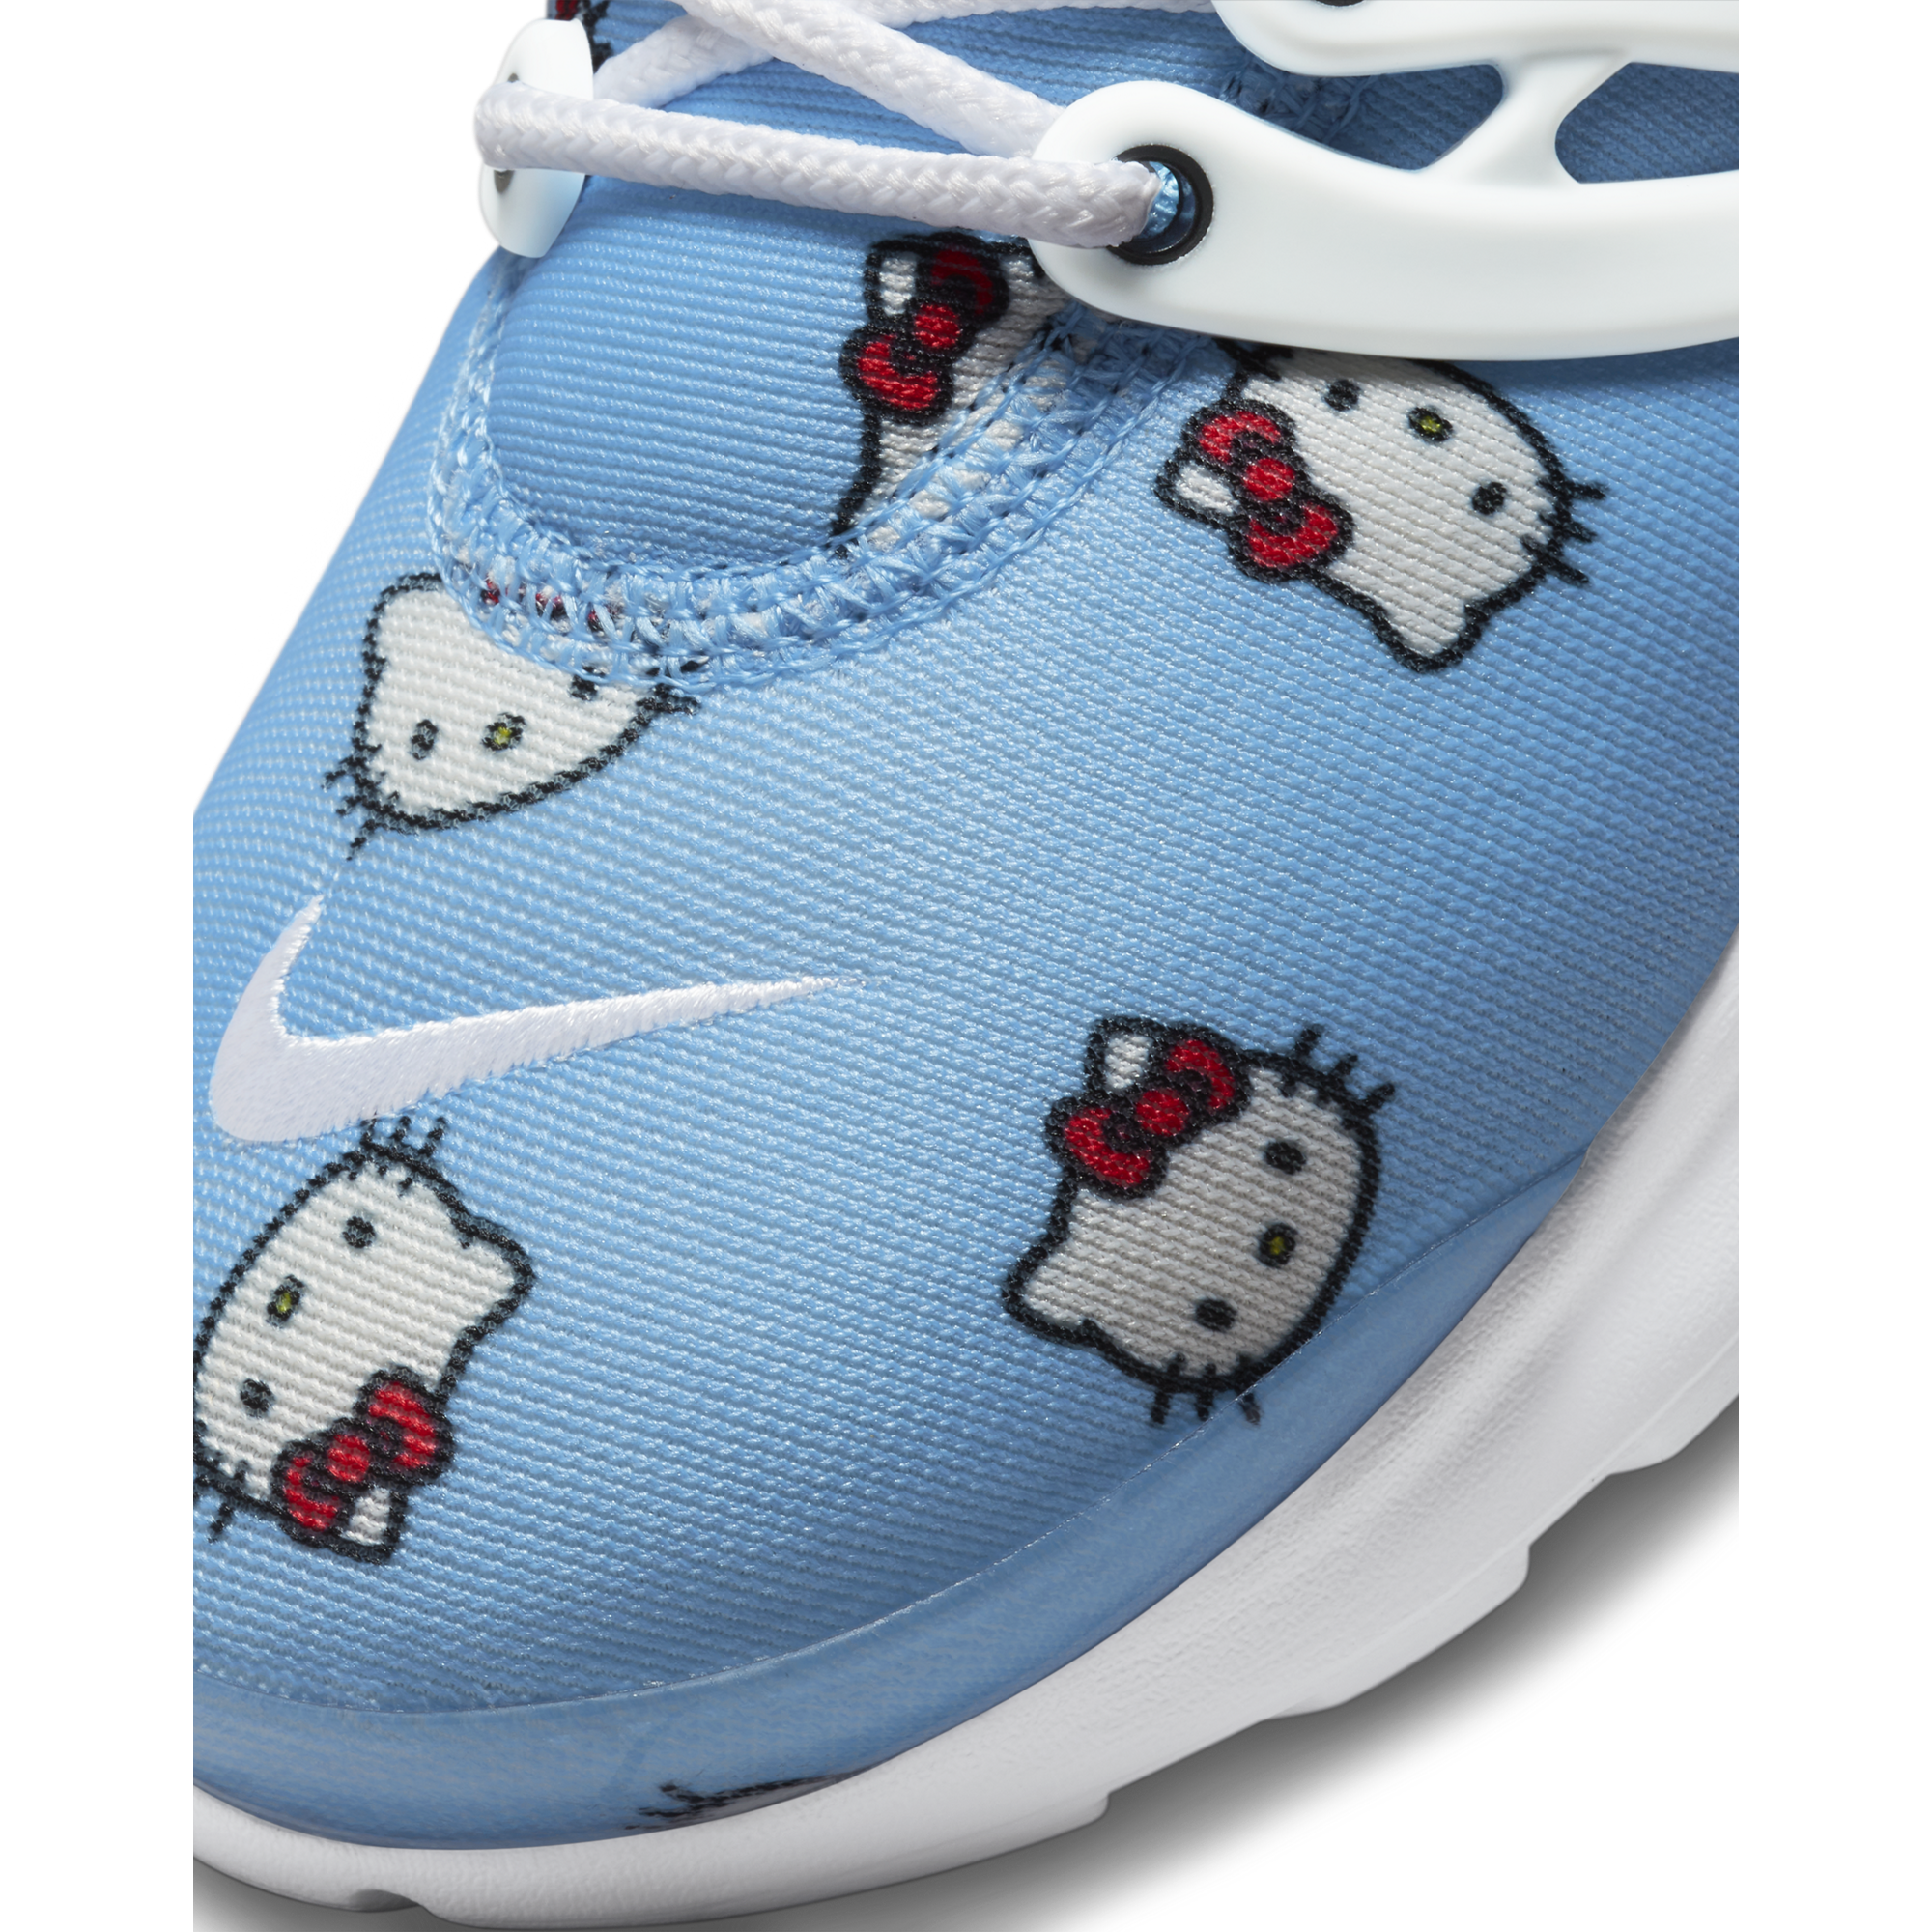 Nike Presto QS (PS) 'Hello Kitty'